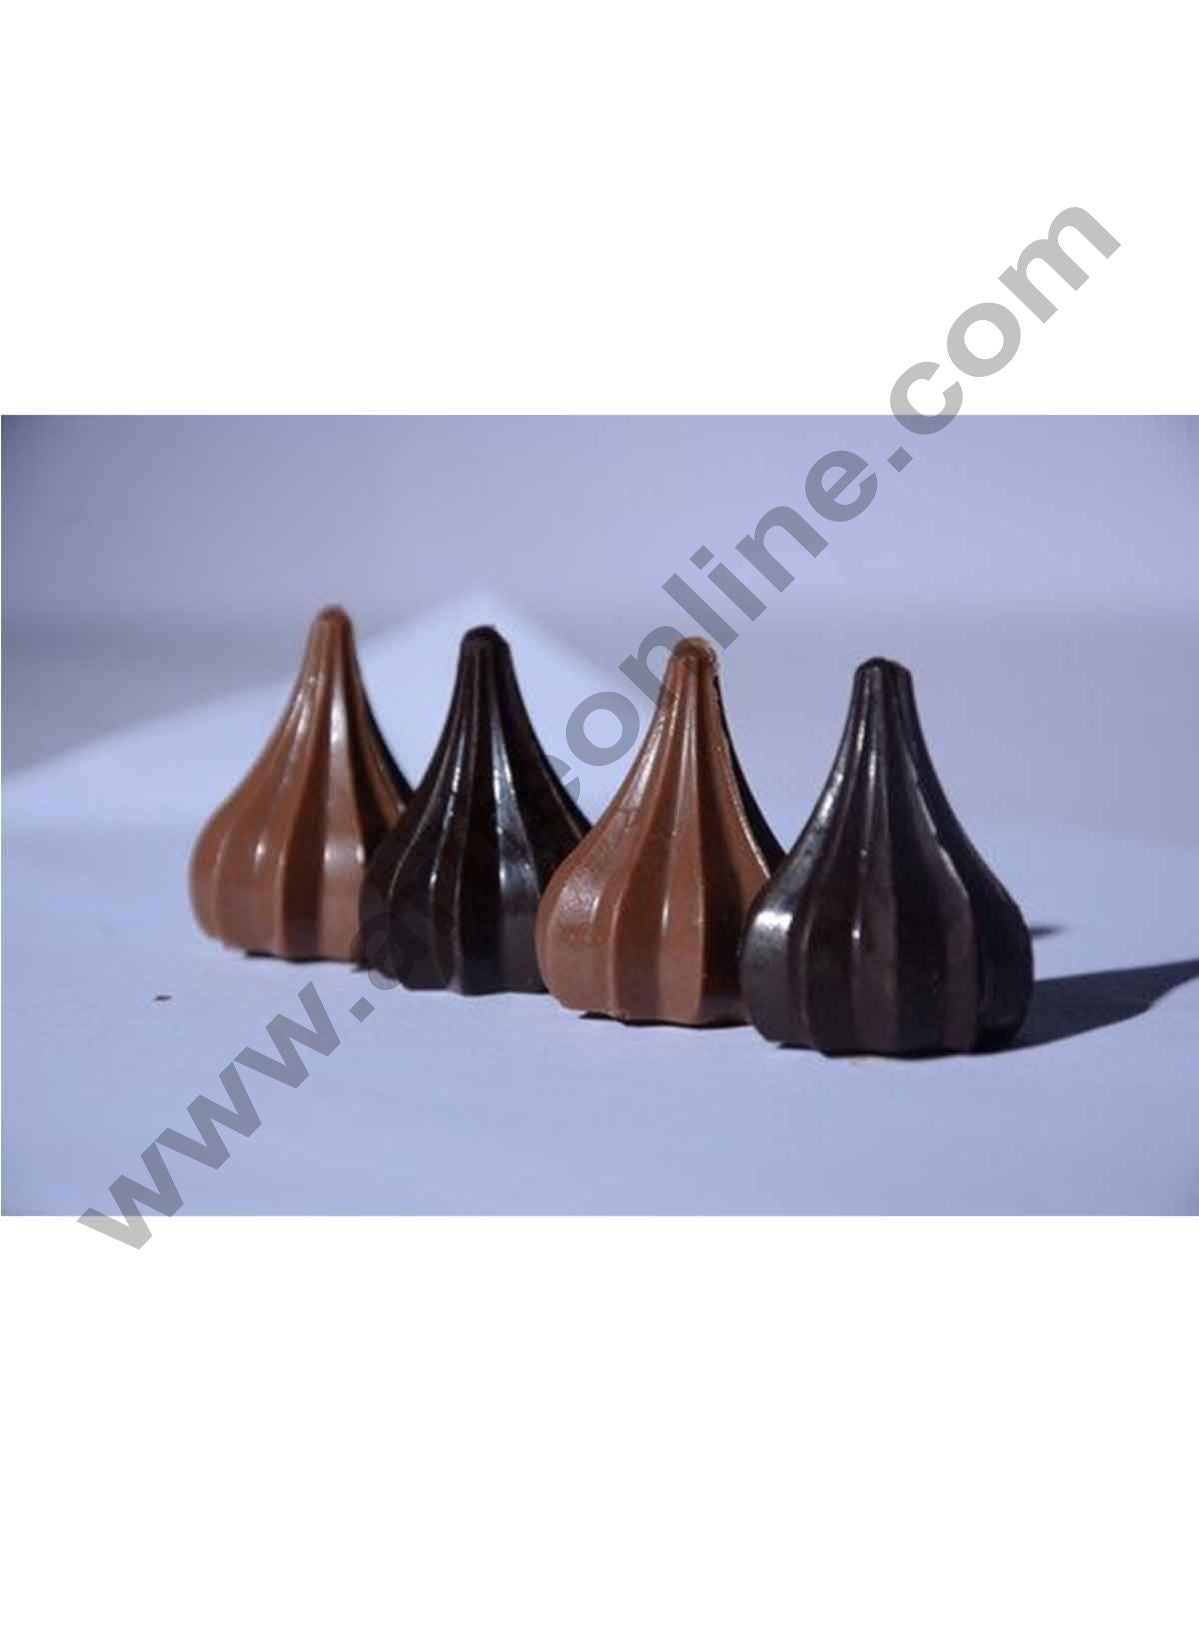 Chocolate Modak Recipe | How to make Chocolate Modak - ASmallBite